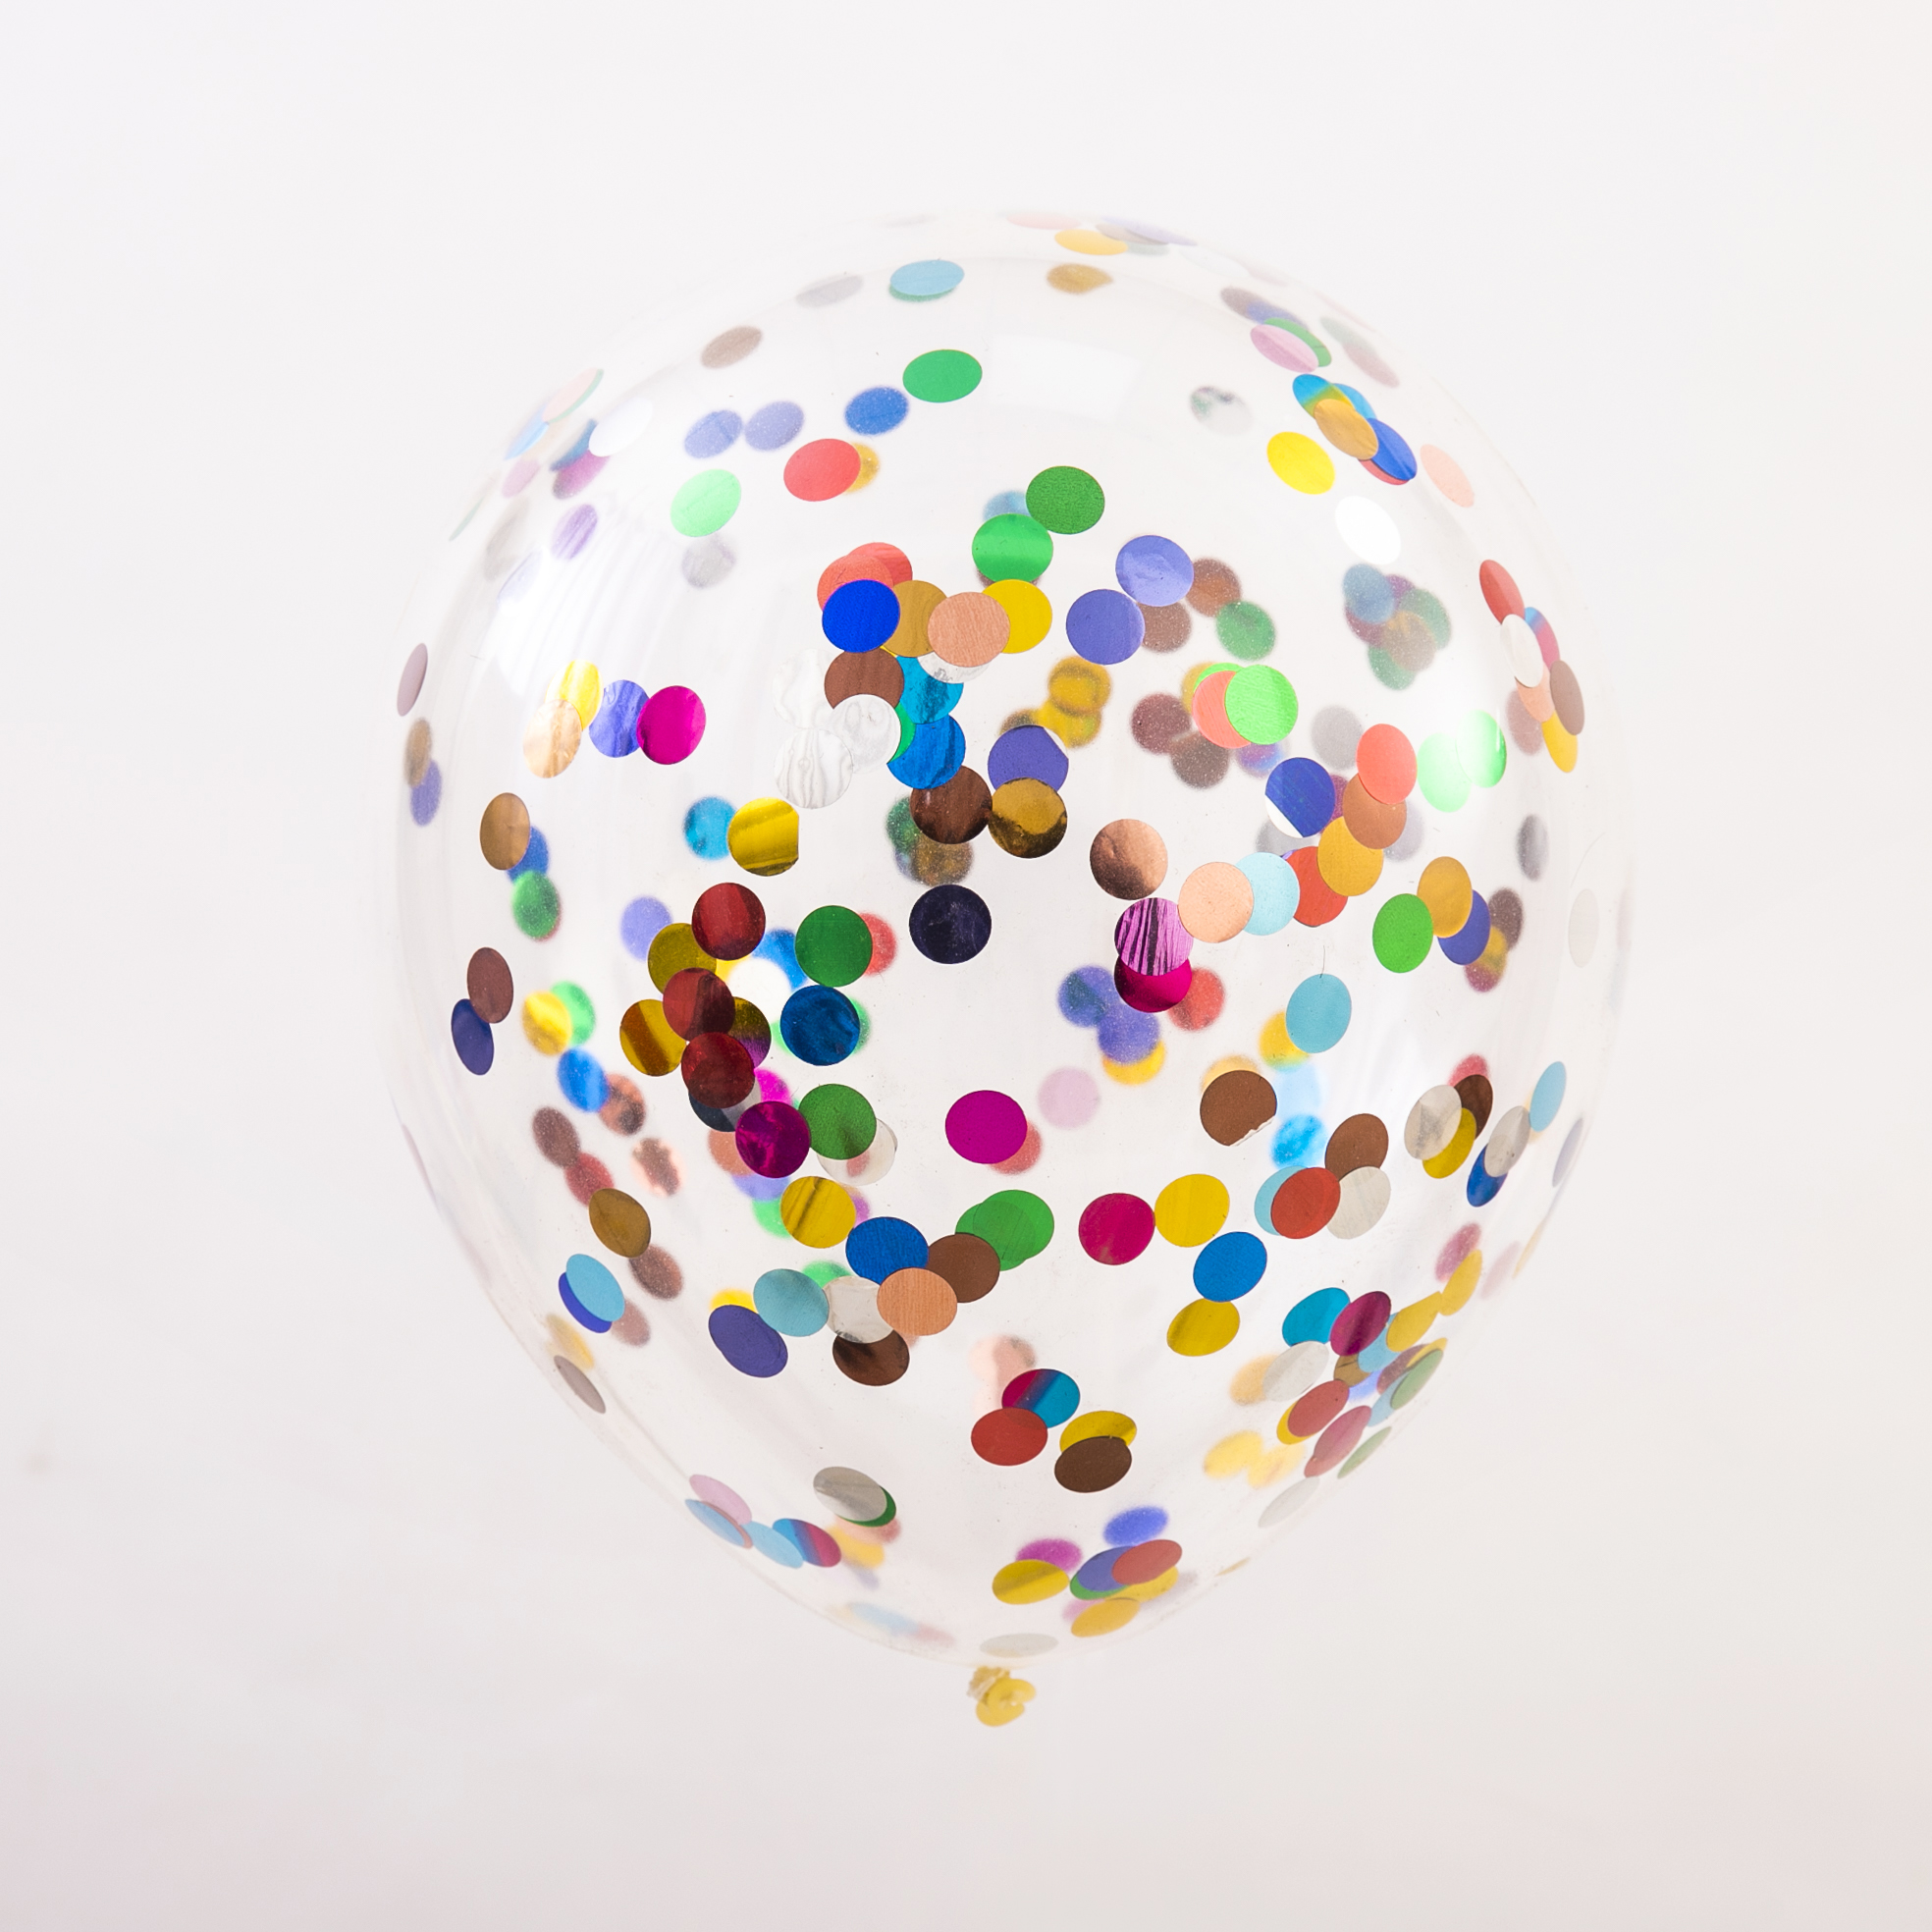 Balloon with Paper & Foil Confetti